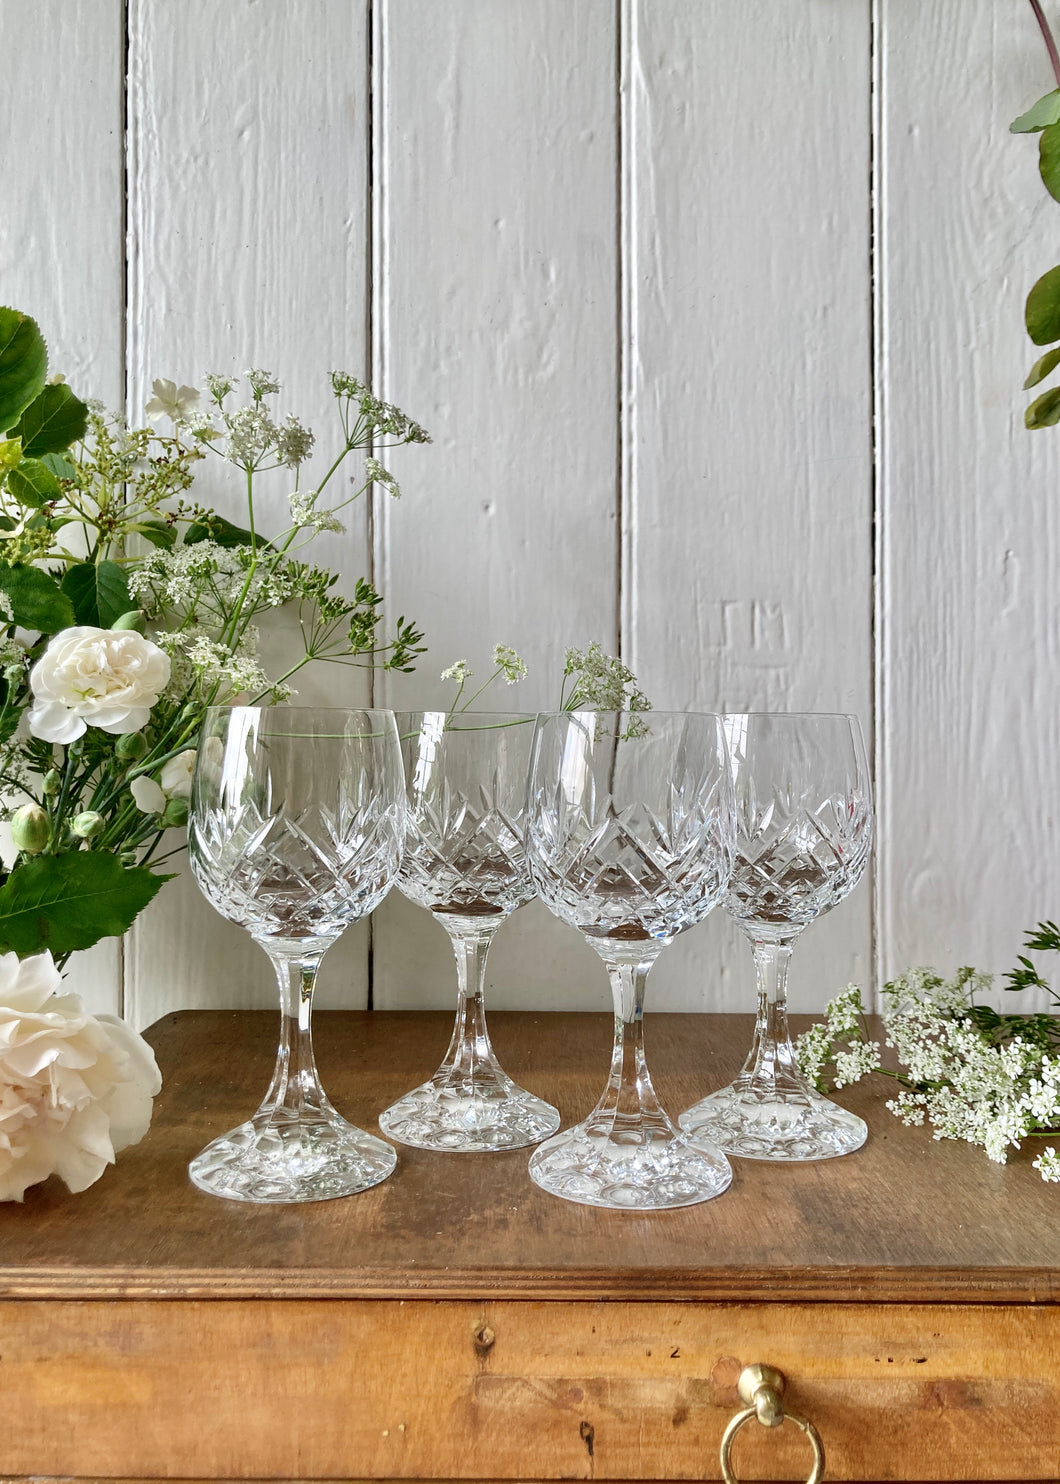 A set of 4 lead crystal vintage wine glasses